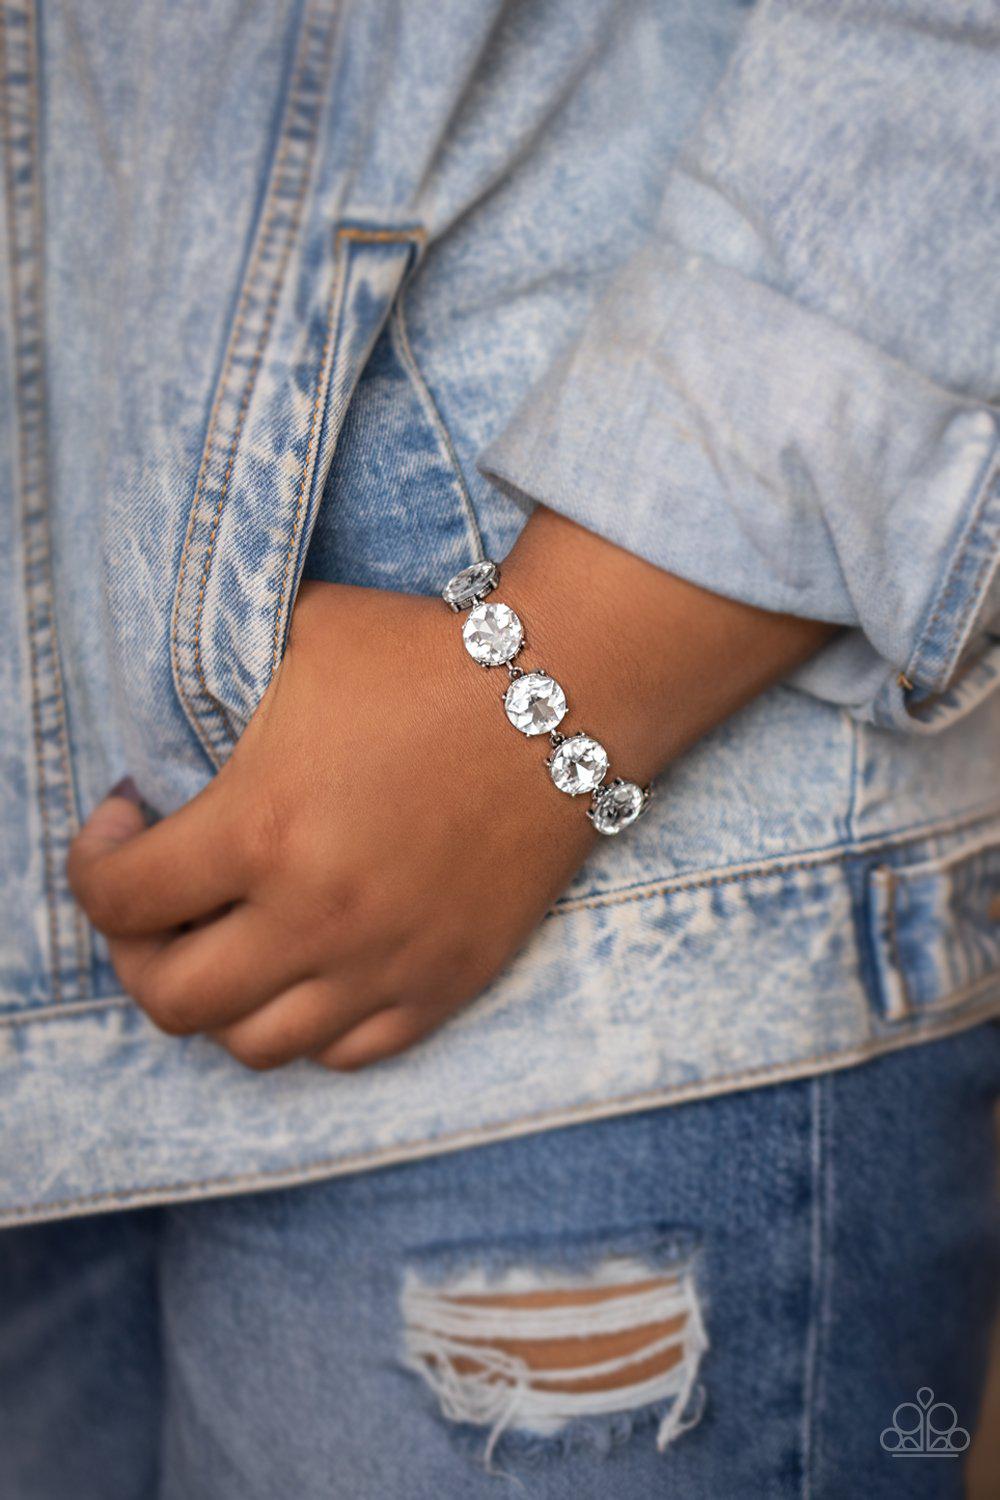 Fabulously Flashy White Rhinestone Bracelet - Paparazzi Accessories-CarasShop.com - $5 Jewelry by Cara Jewels